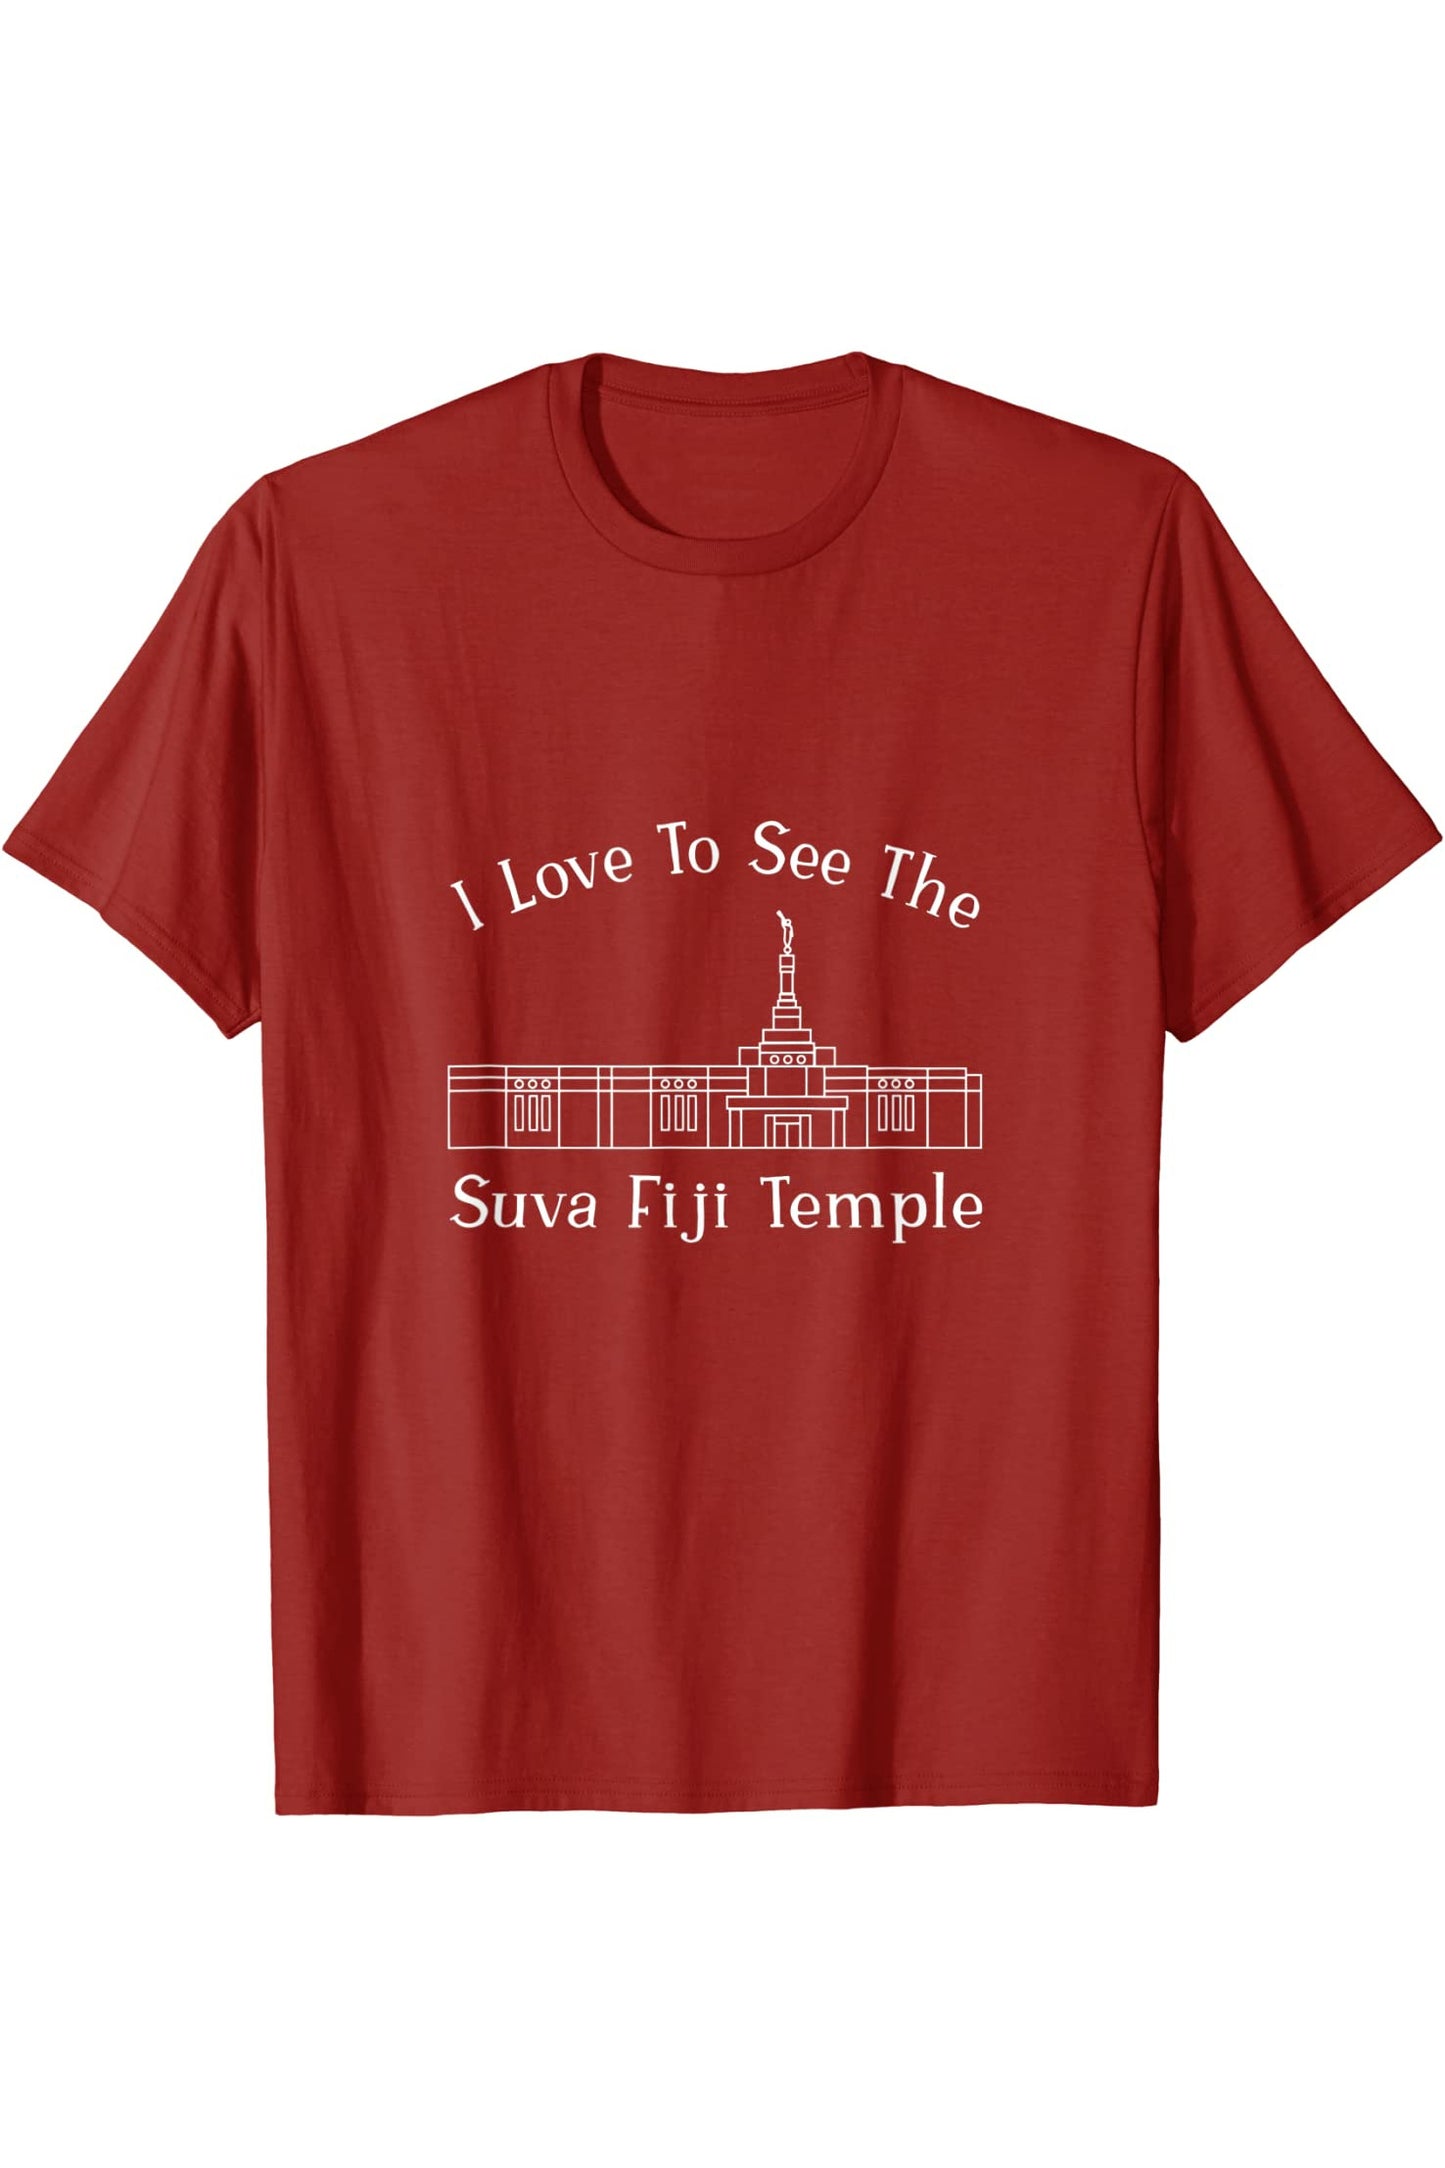 Suva Fiji Temple T-Shirt - Happy Style (English) US